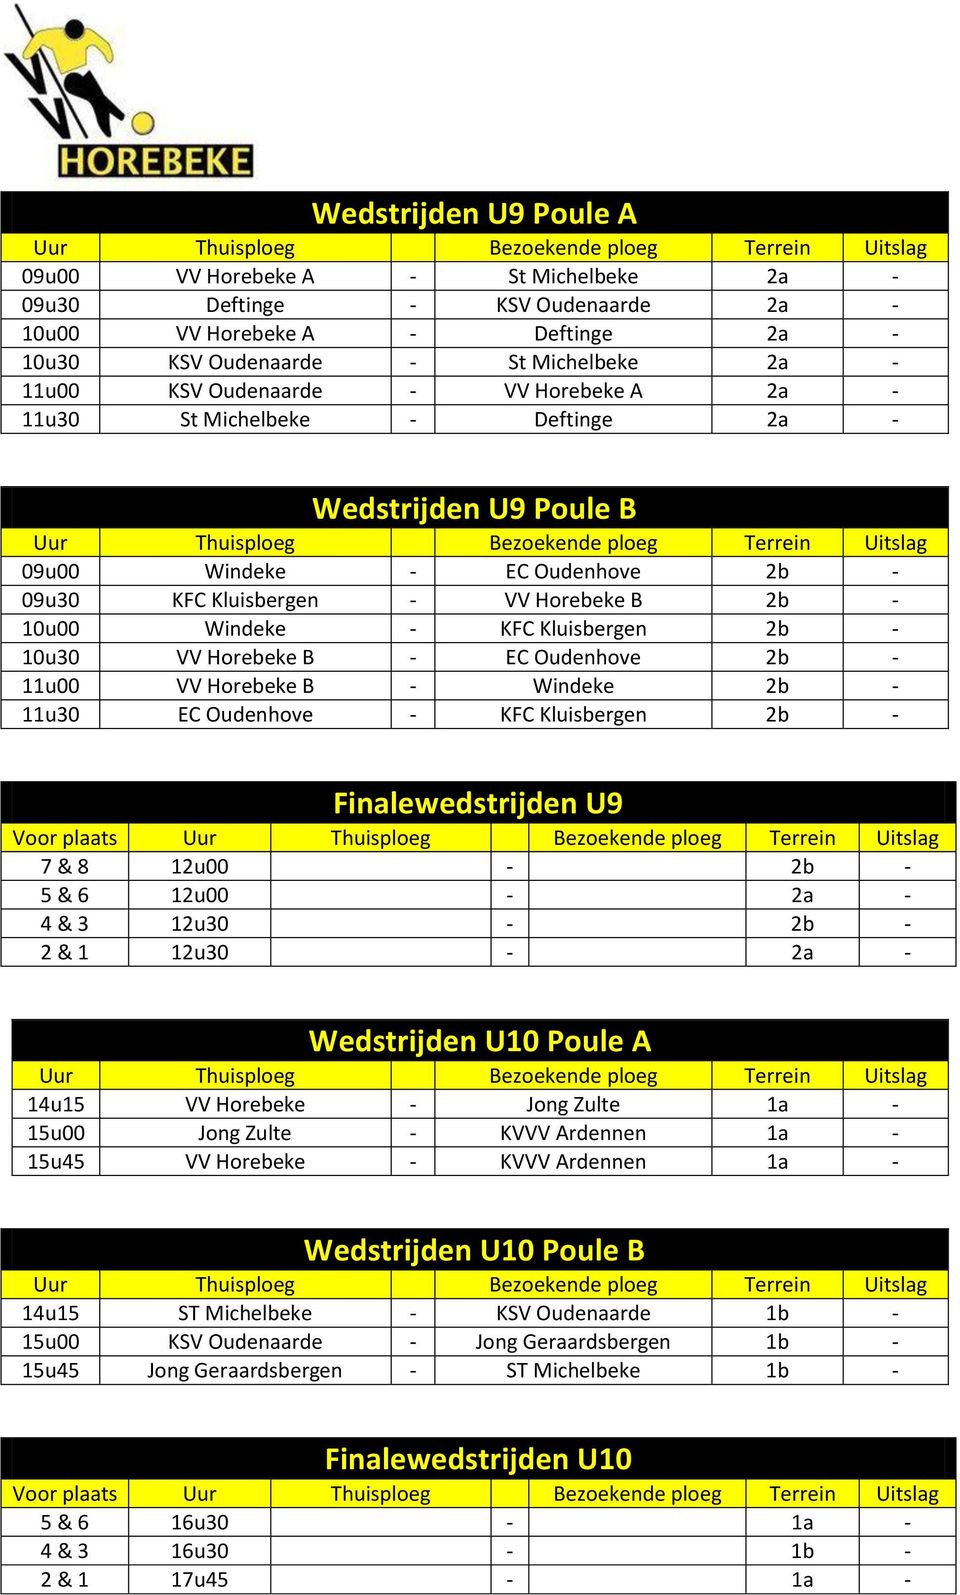 VV Horebeke B - EC Oudenhove 2b - 11u00 VV Horebeke B - Windeke 2b - 11u30 EC Oudenhove - KFC Kluisbergen 2b - Finalewedstrijden U9 Voor plaats 7 & 8 12u00-2b - 5 & 6 12u00-2a - 4 & 3 12u30-2b - 2 &